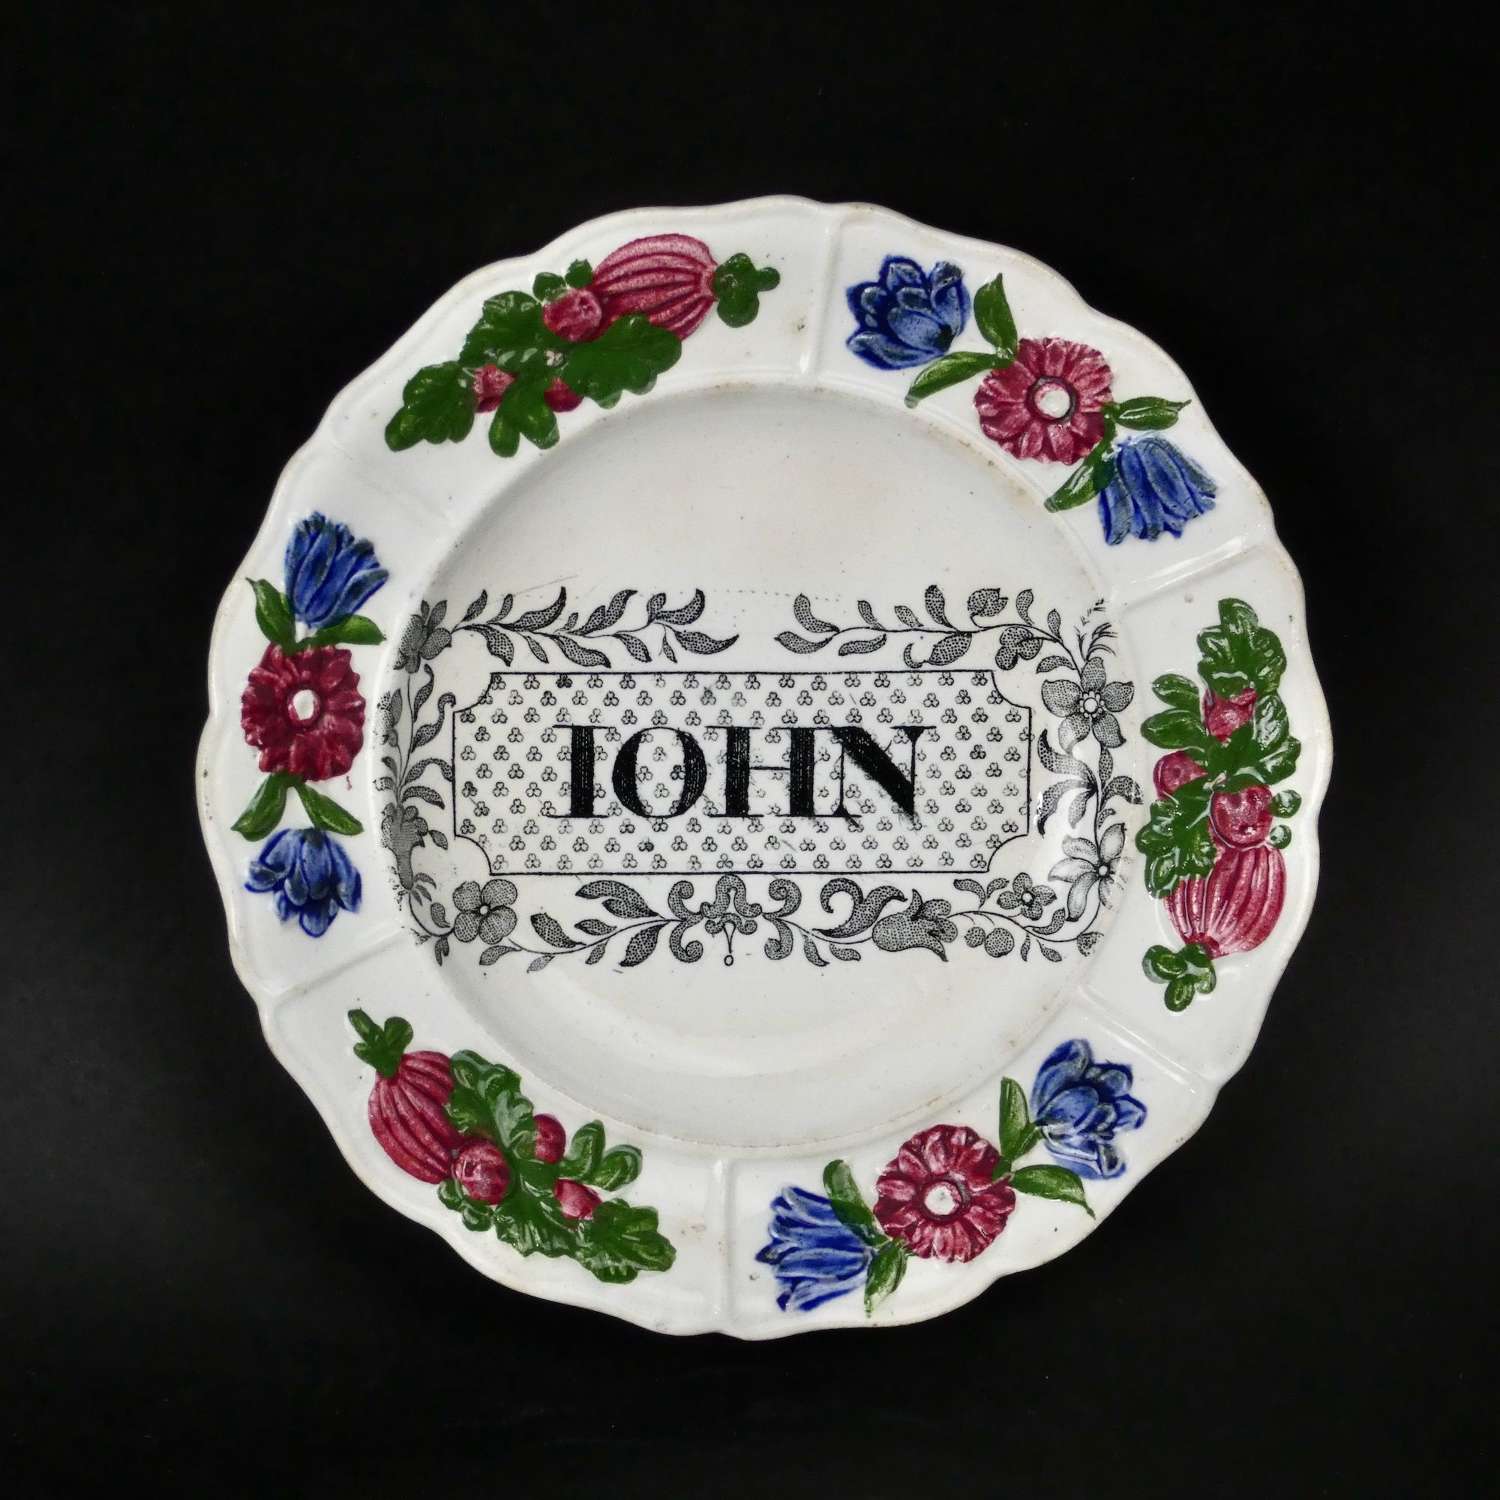 Child's plate named John